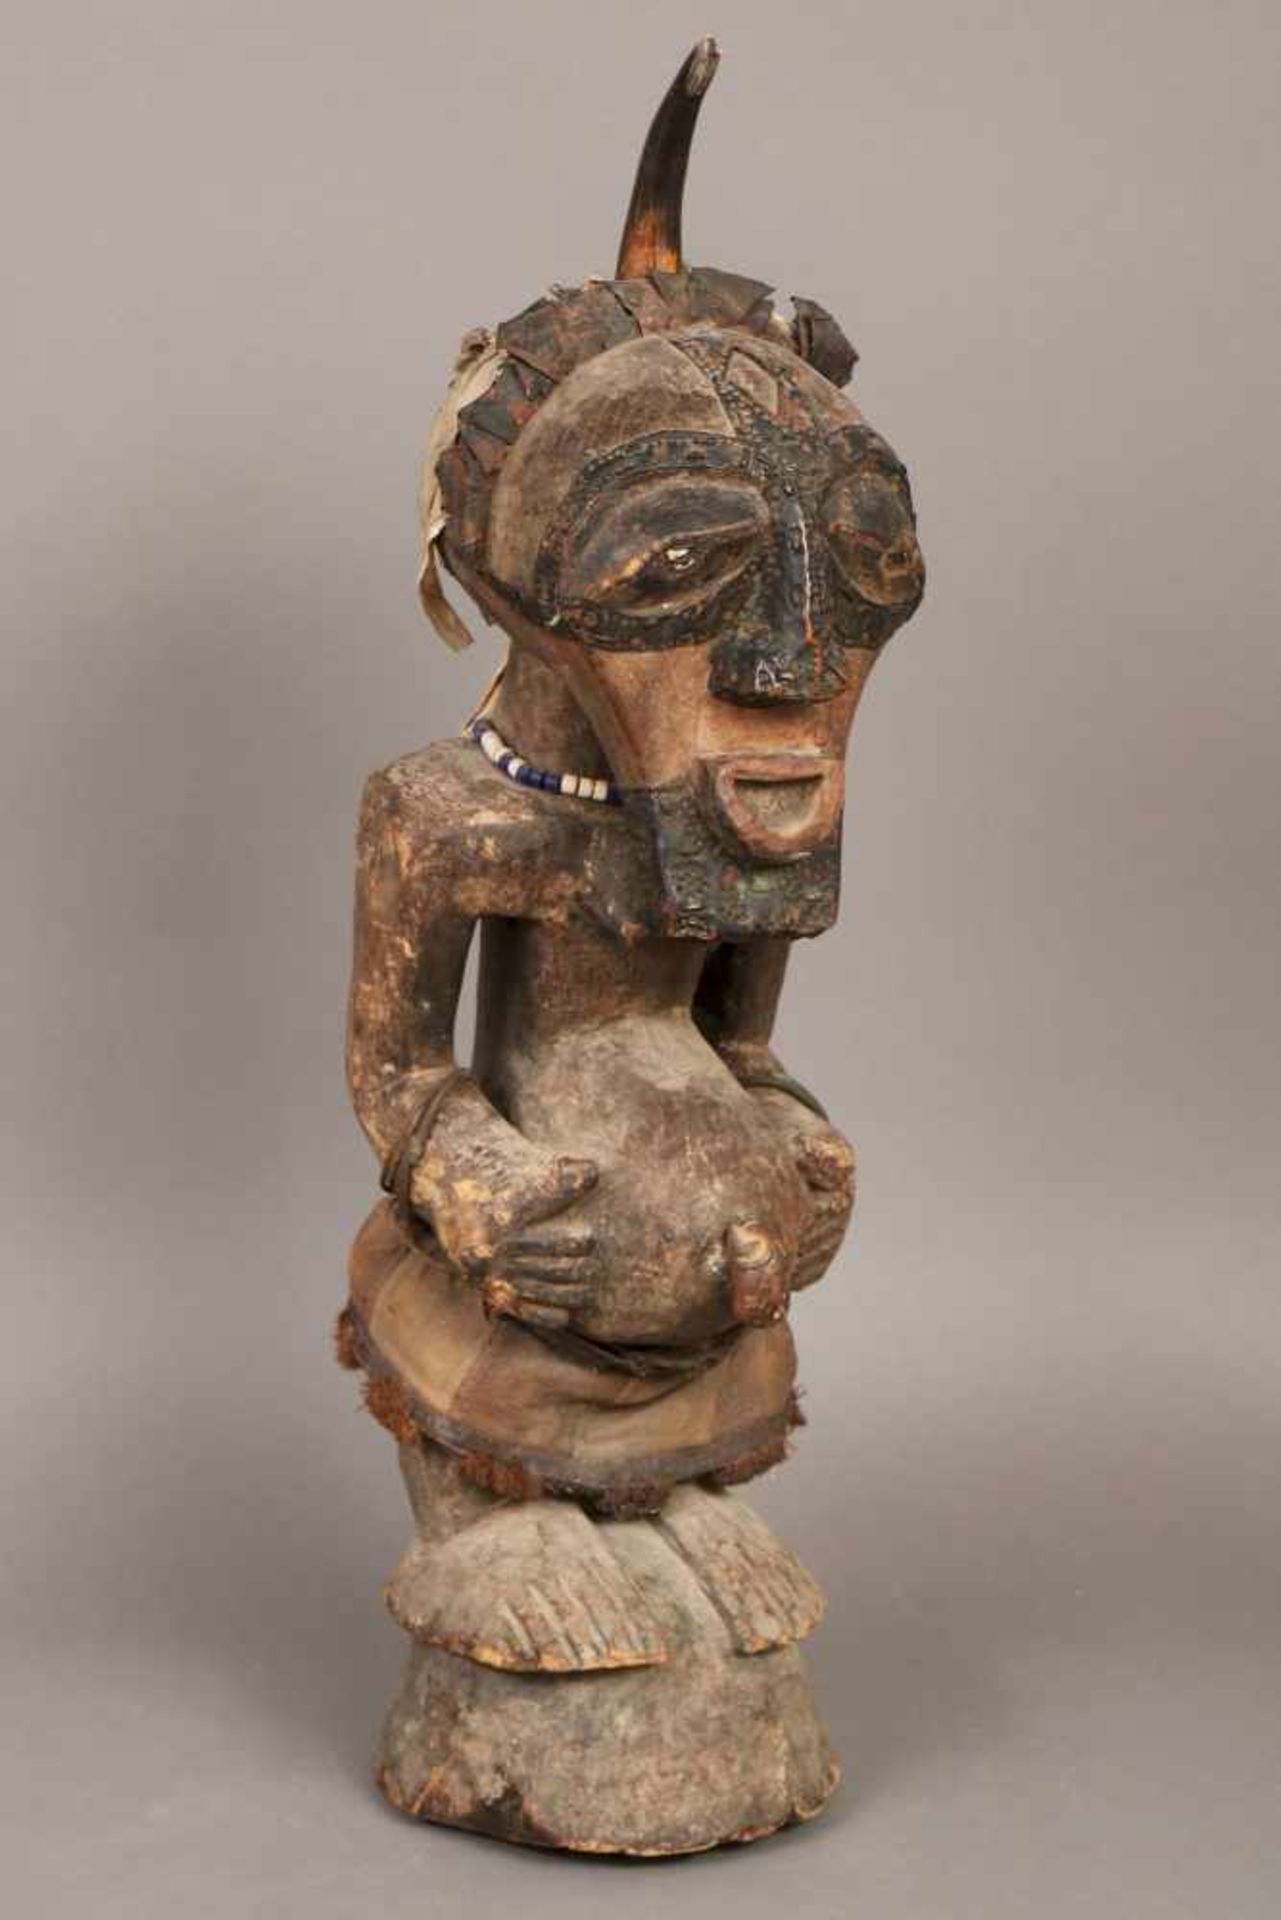 Afrikanische RitualfigurHolz, geschnitzt und dunkel patiniert, ¨gebärende weibliche Figur¨, wohl